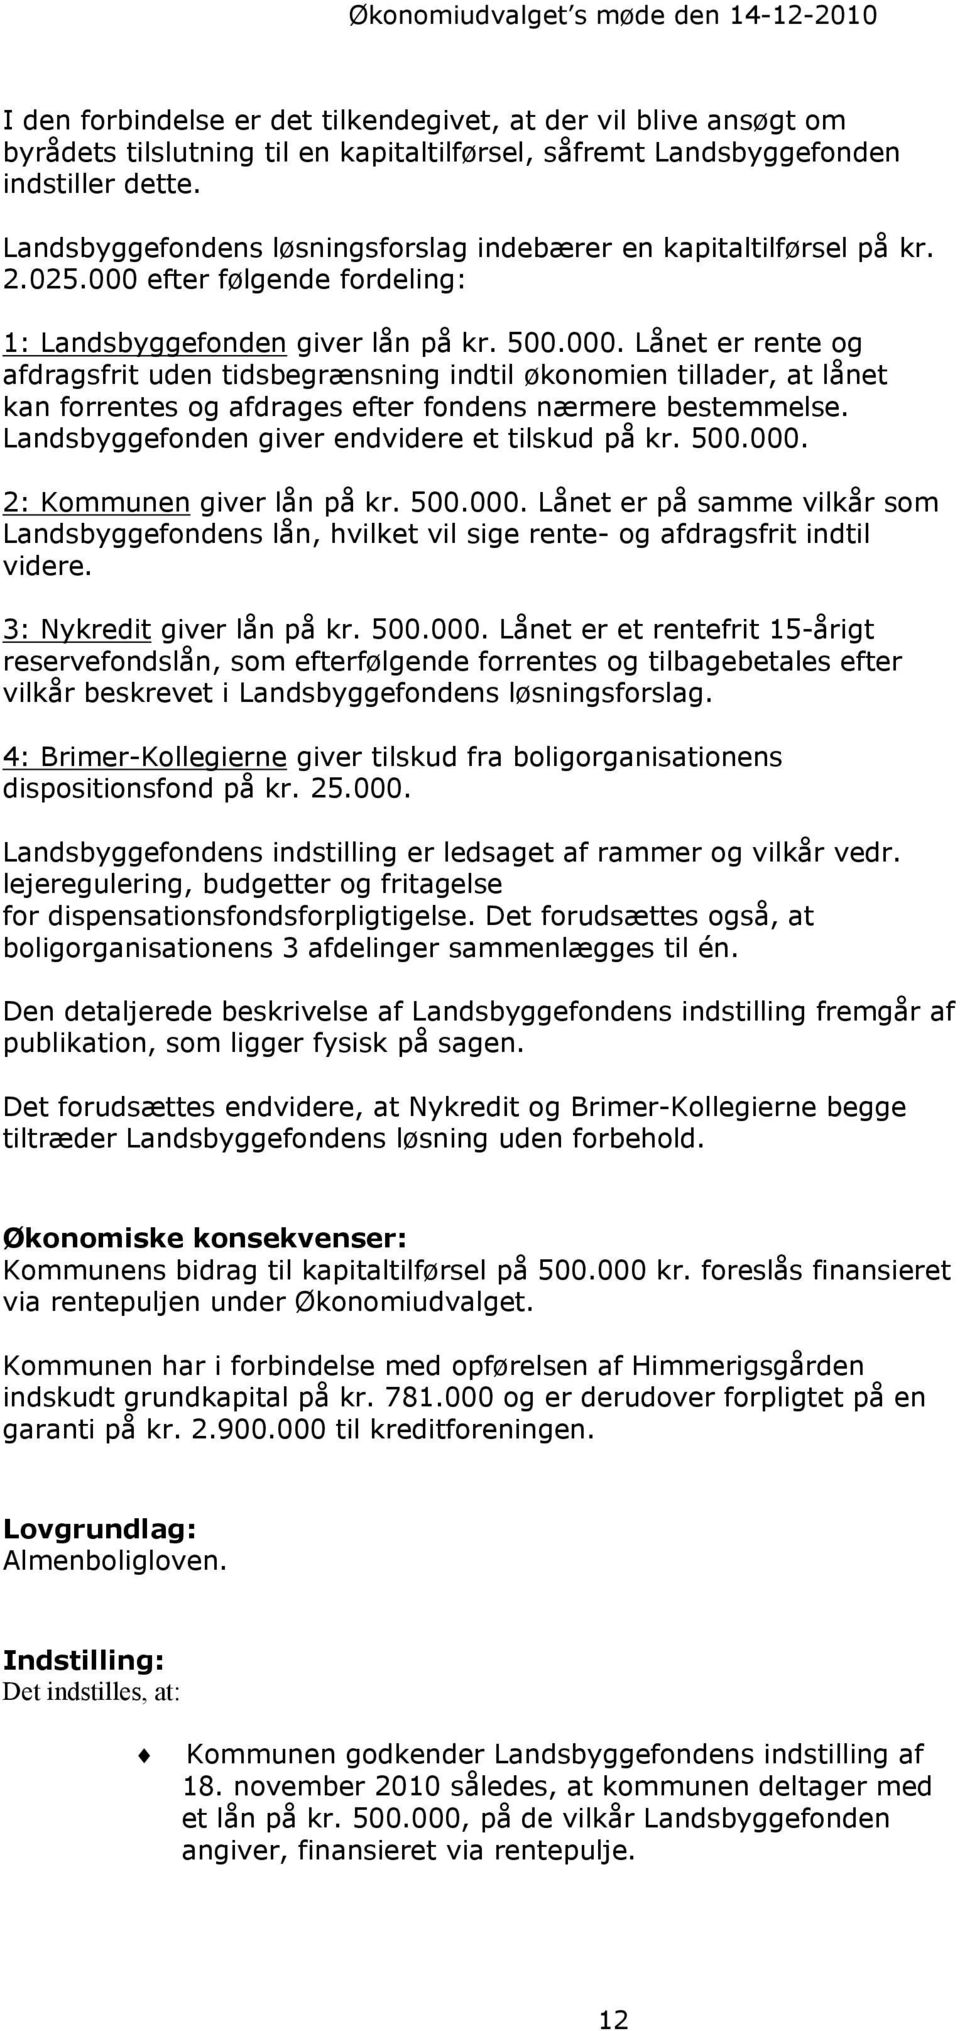 efter følgende fordeling: 1: Landsbyggefonden giver lån på kr. 500.000.